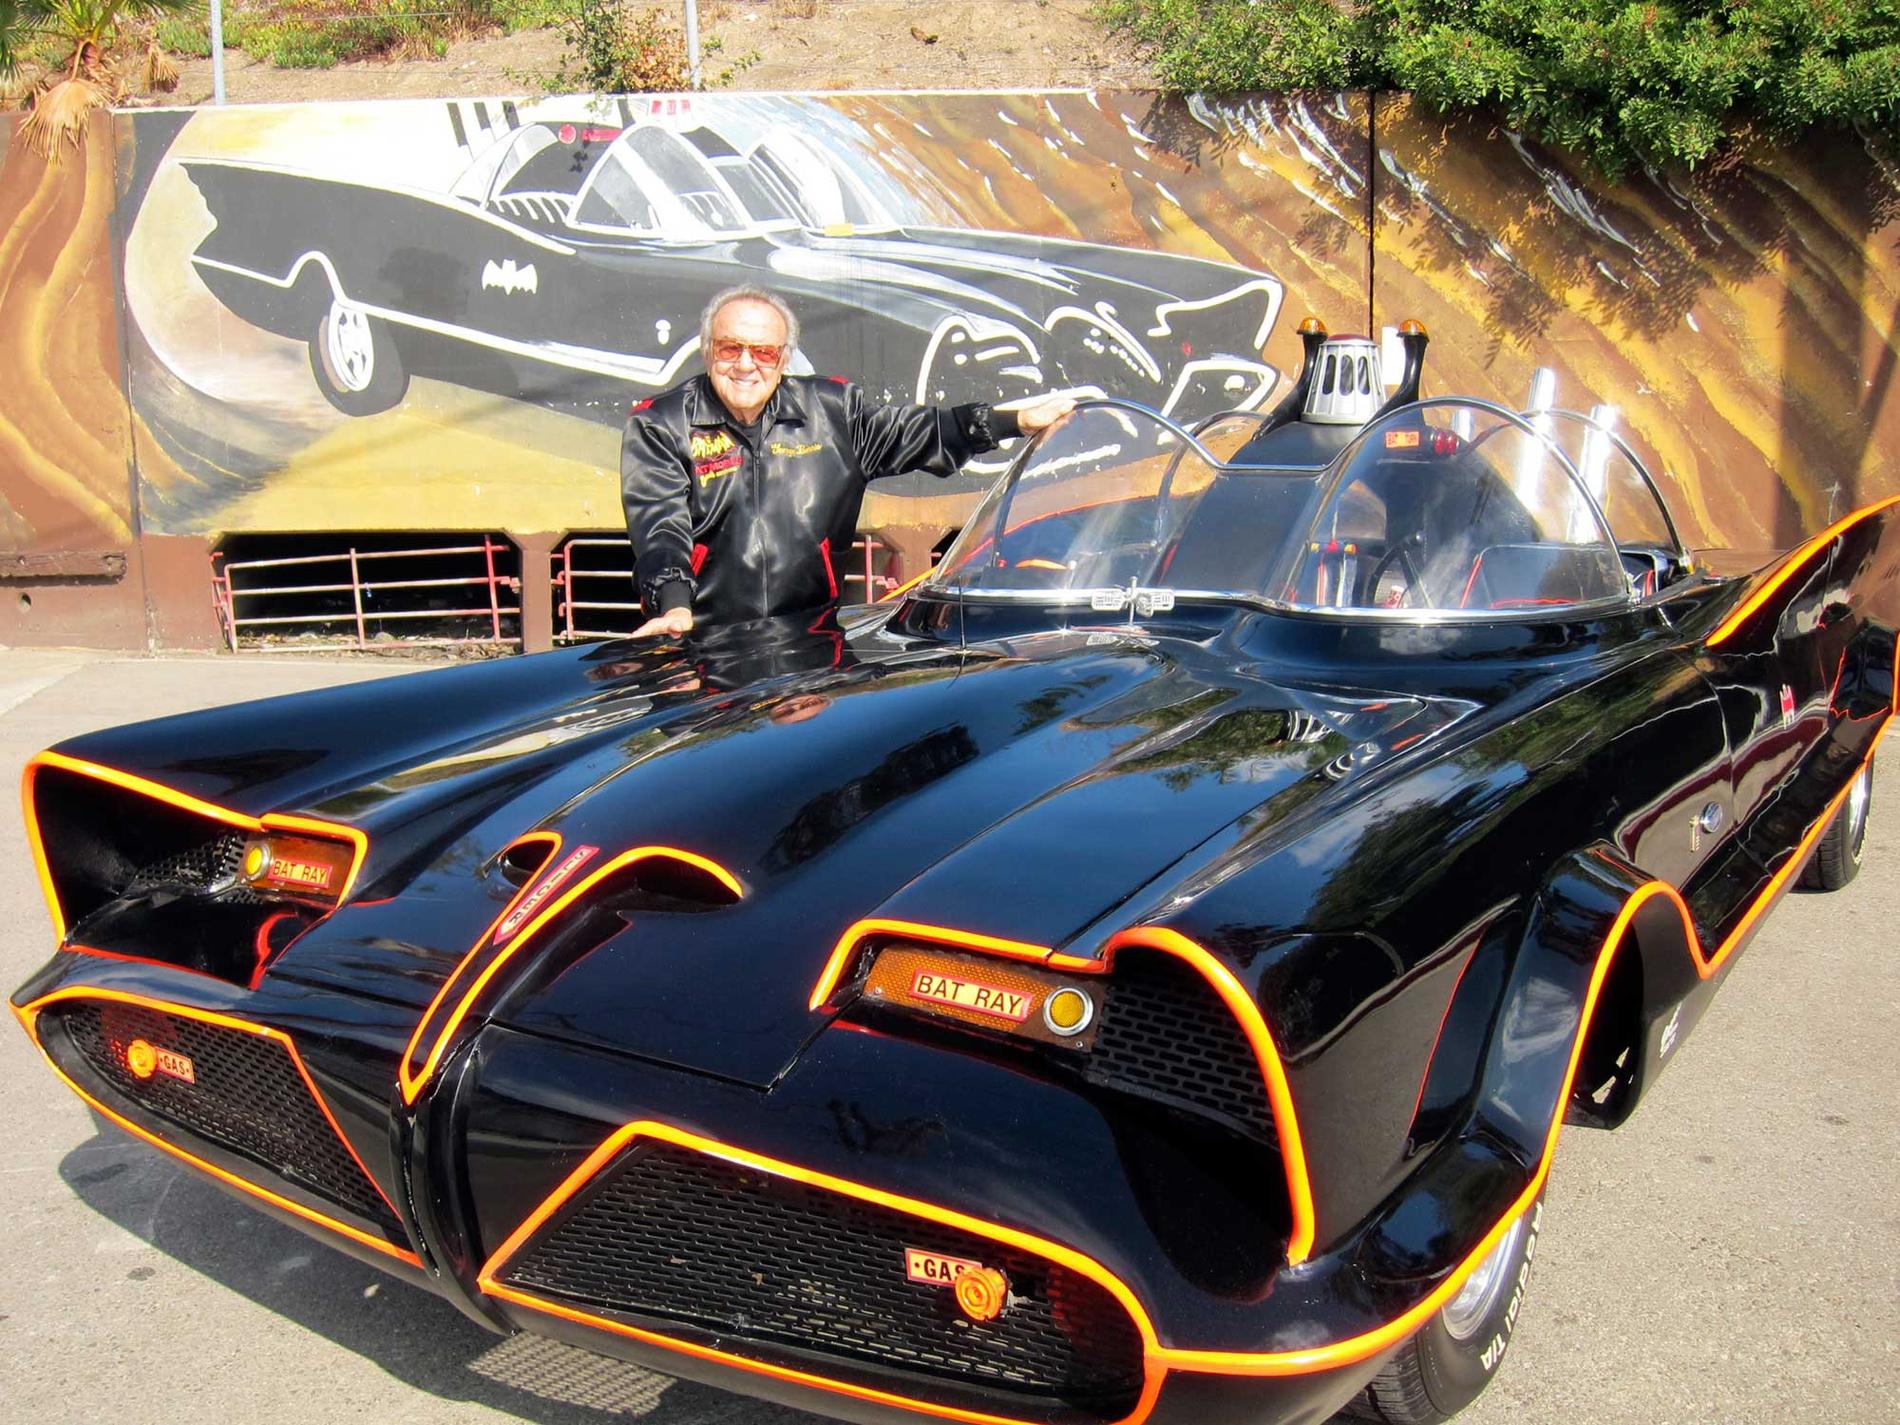 George Barris poserar med den urspungliga Batmobilen.